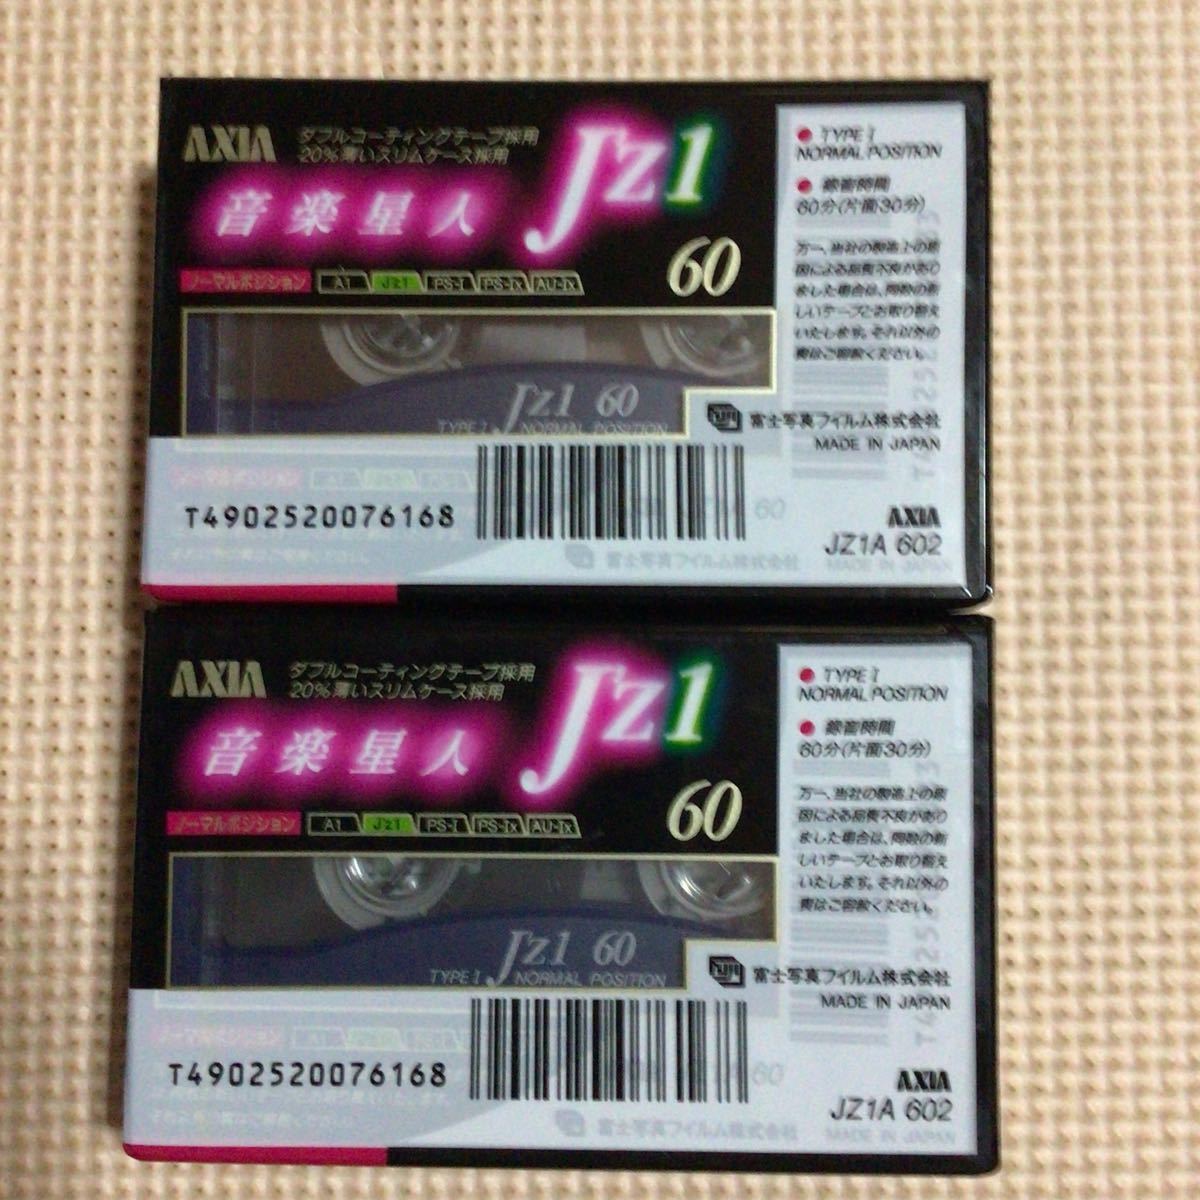 AXIA J'Z1 60 2パックx2 ノーマルポジション カセットテープ4本セット【未開封新品】★の画像3